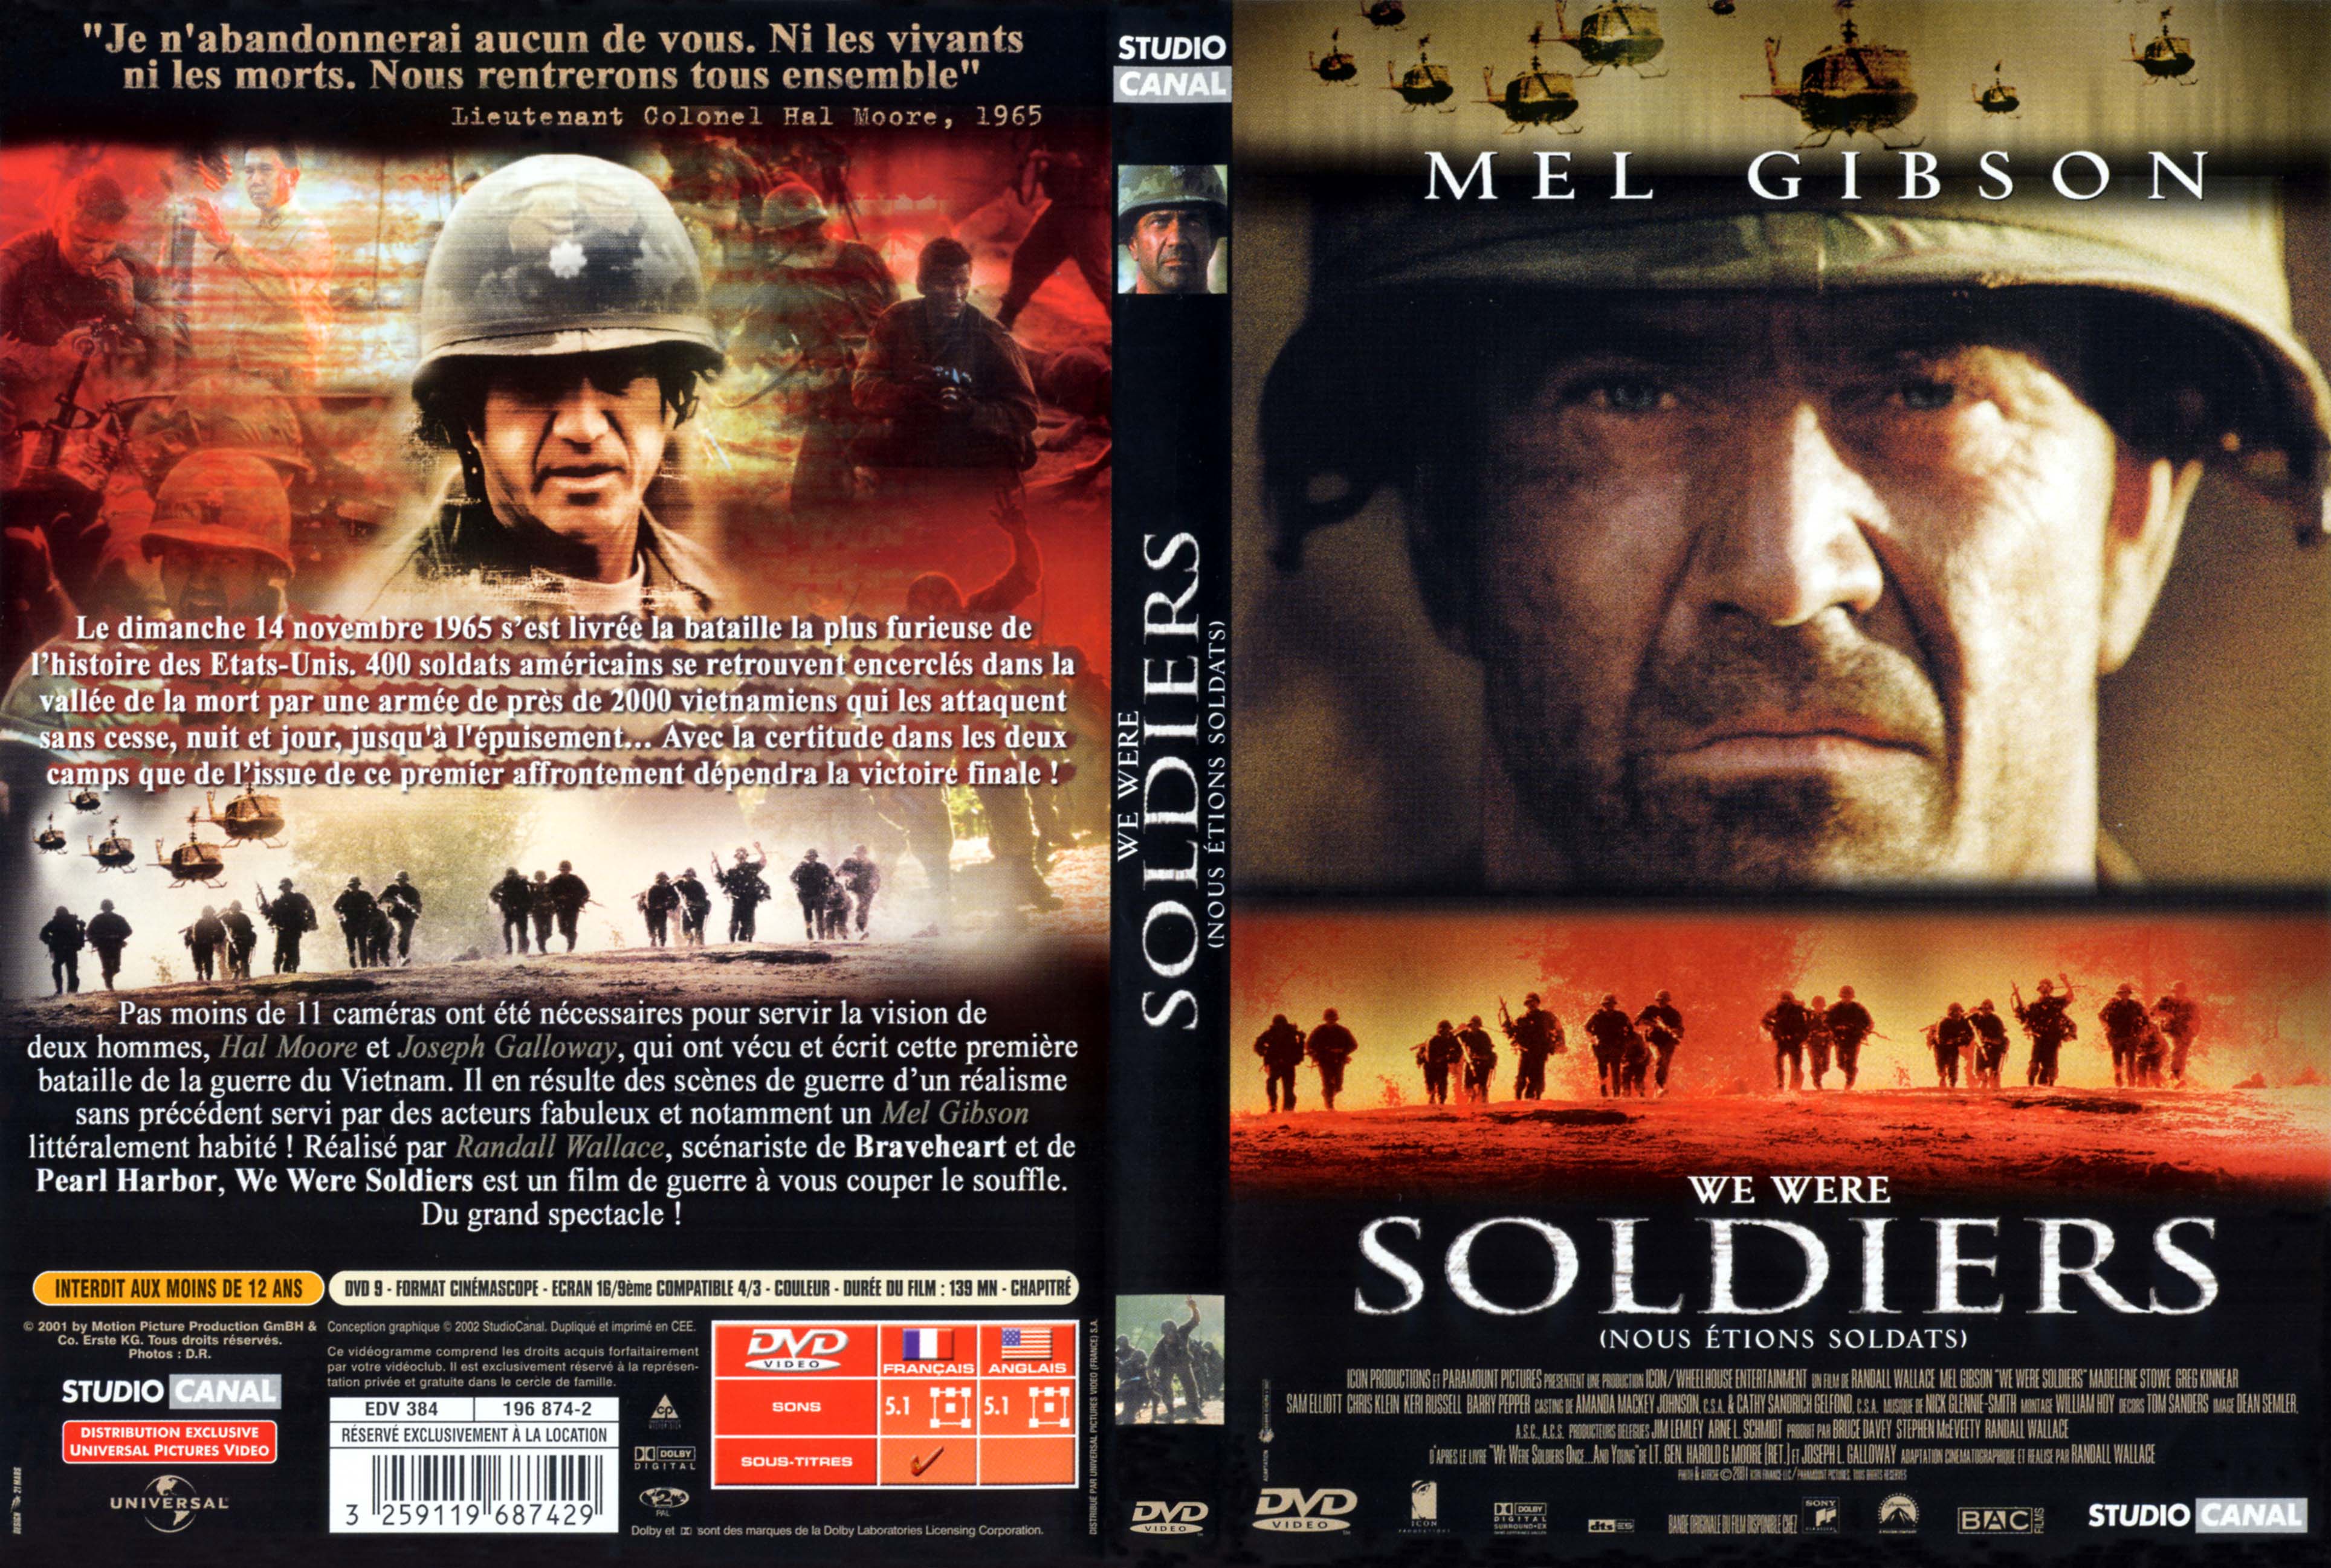 Jaquette DVD We were soldiers - nous tions soldats